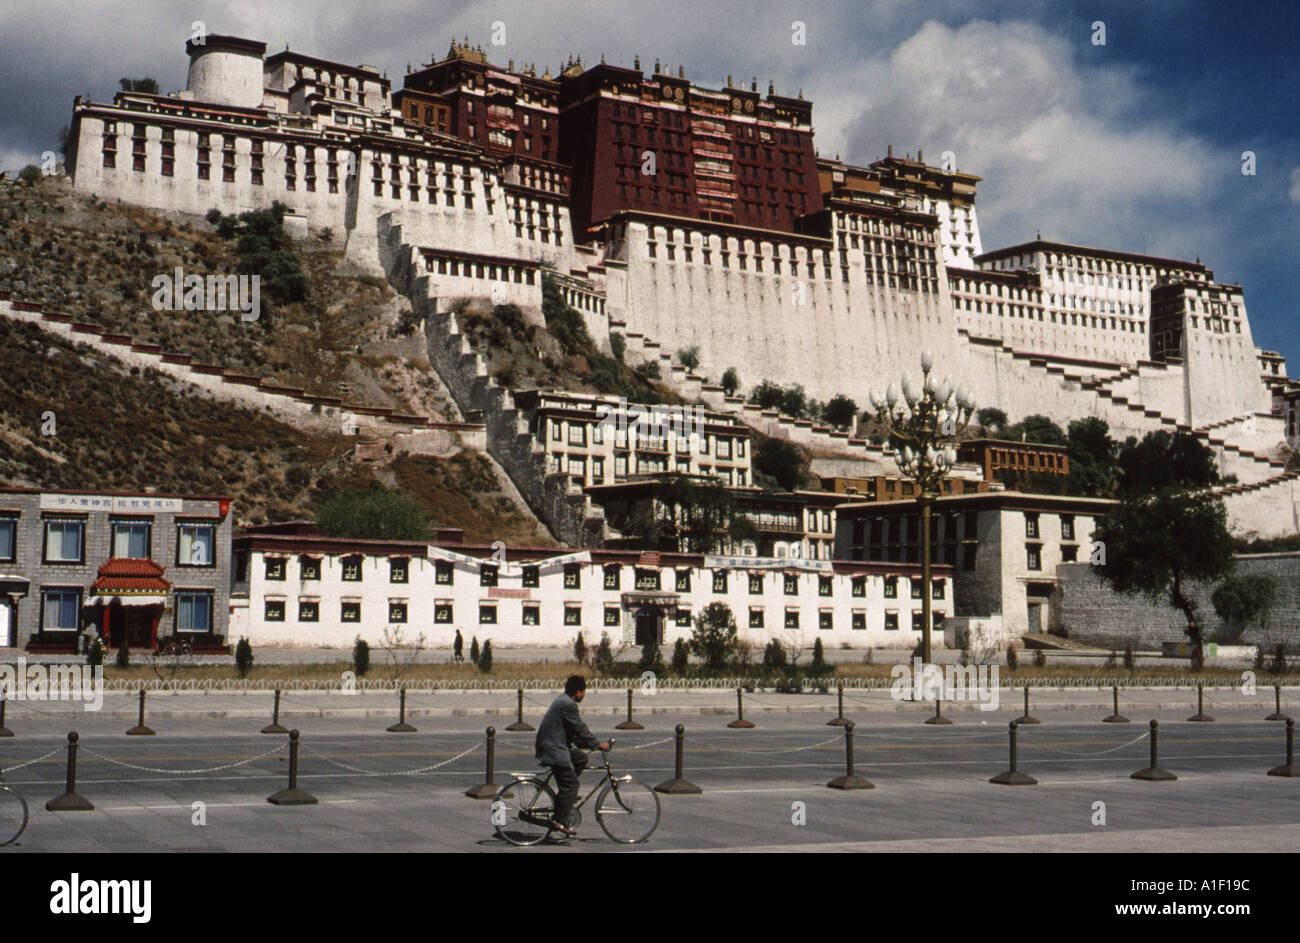 Der Potala Palast ist eine Dzong Festung in Lhasa, Tibet. Es war der Winterpalast der Dalai Lamas von 1649 bis 1959. UN-Weltkulturerbe. Stockfoto